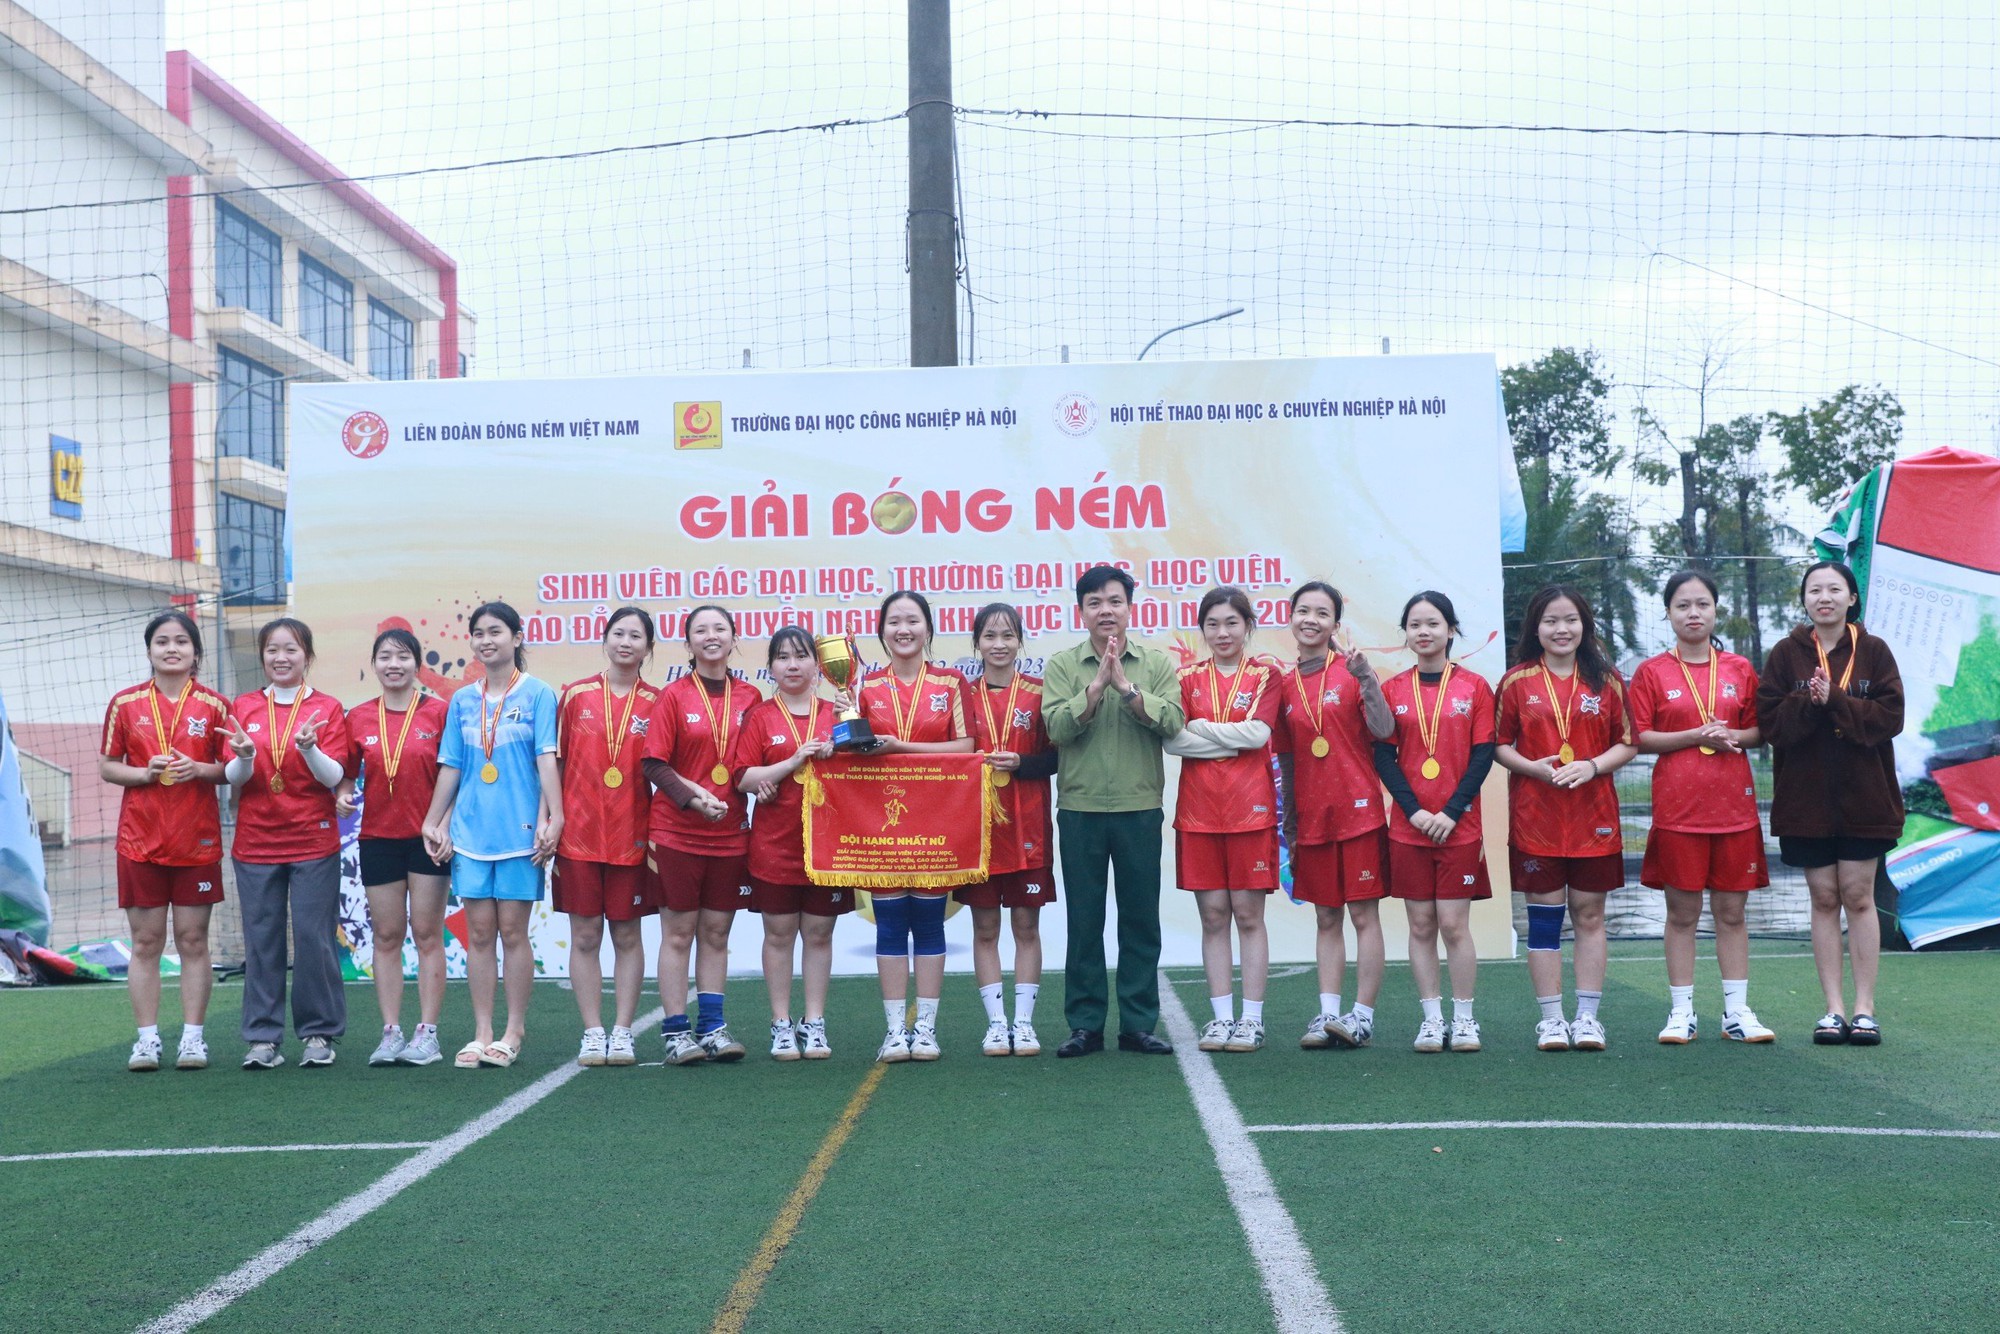 Đại học TDTT Bắc Ninh, ĐH Thương Mại vô địch giải Bóng ném các trường ĐH, HV, CĐ và Chuyên nghiệp khu vực Hà Nội - Ảnh 4.